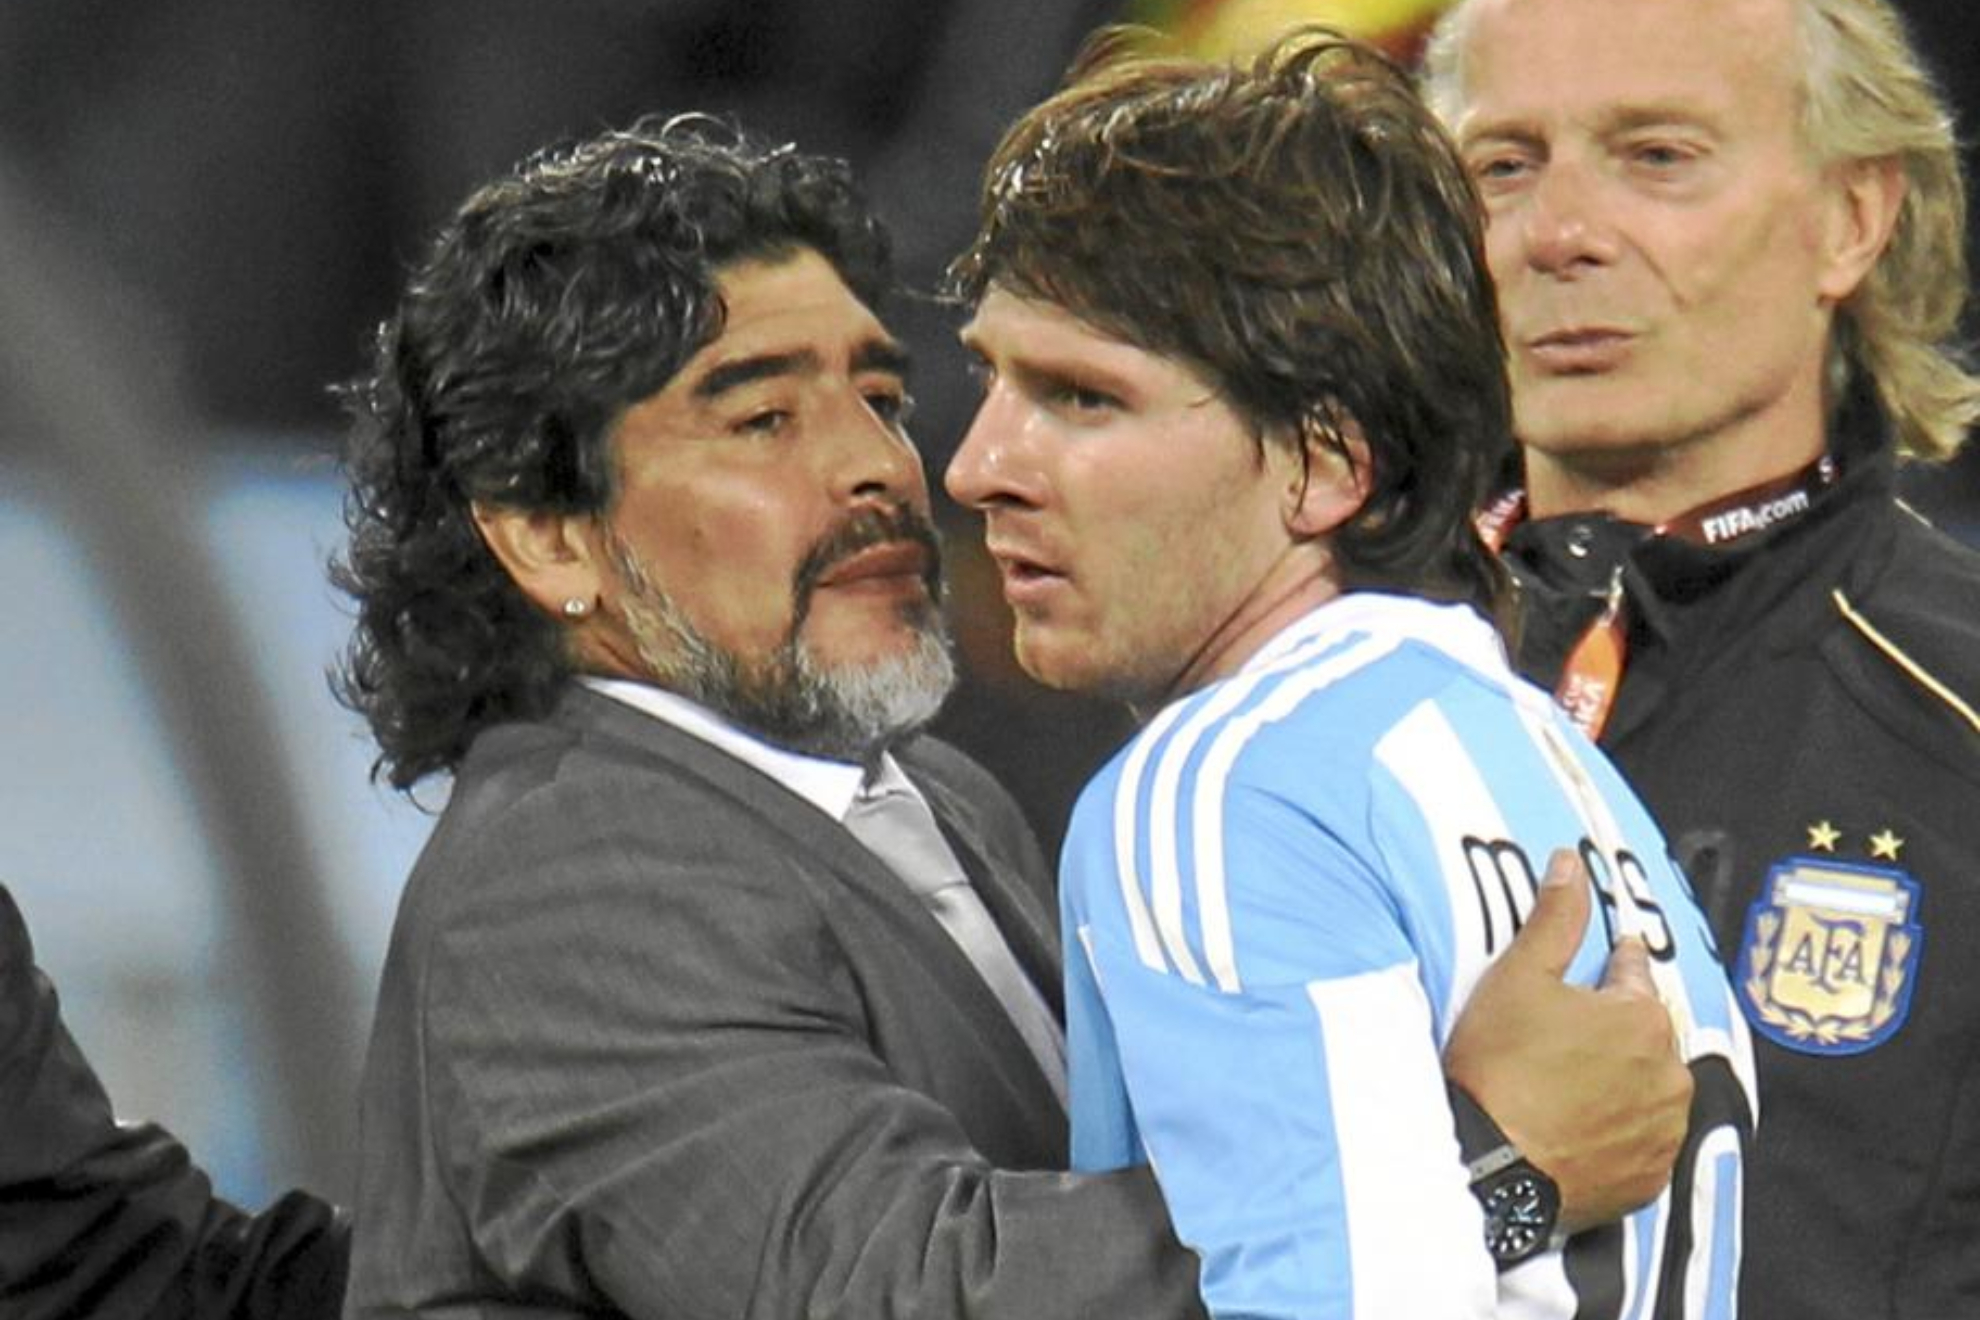 Diego Maradon y Leo Messi, juntos en el Mundial de Sudfrica 2010.